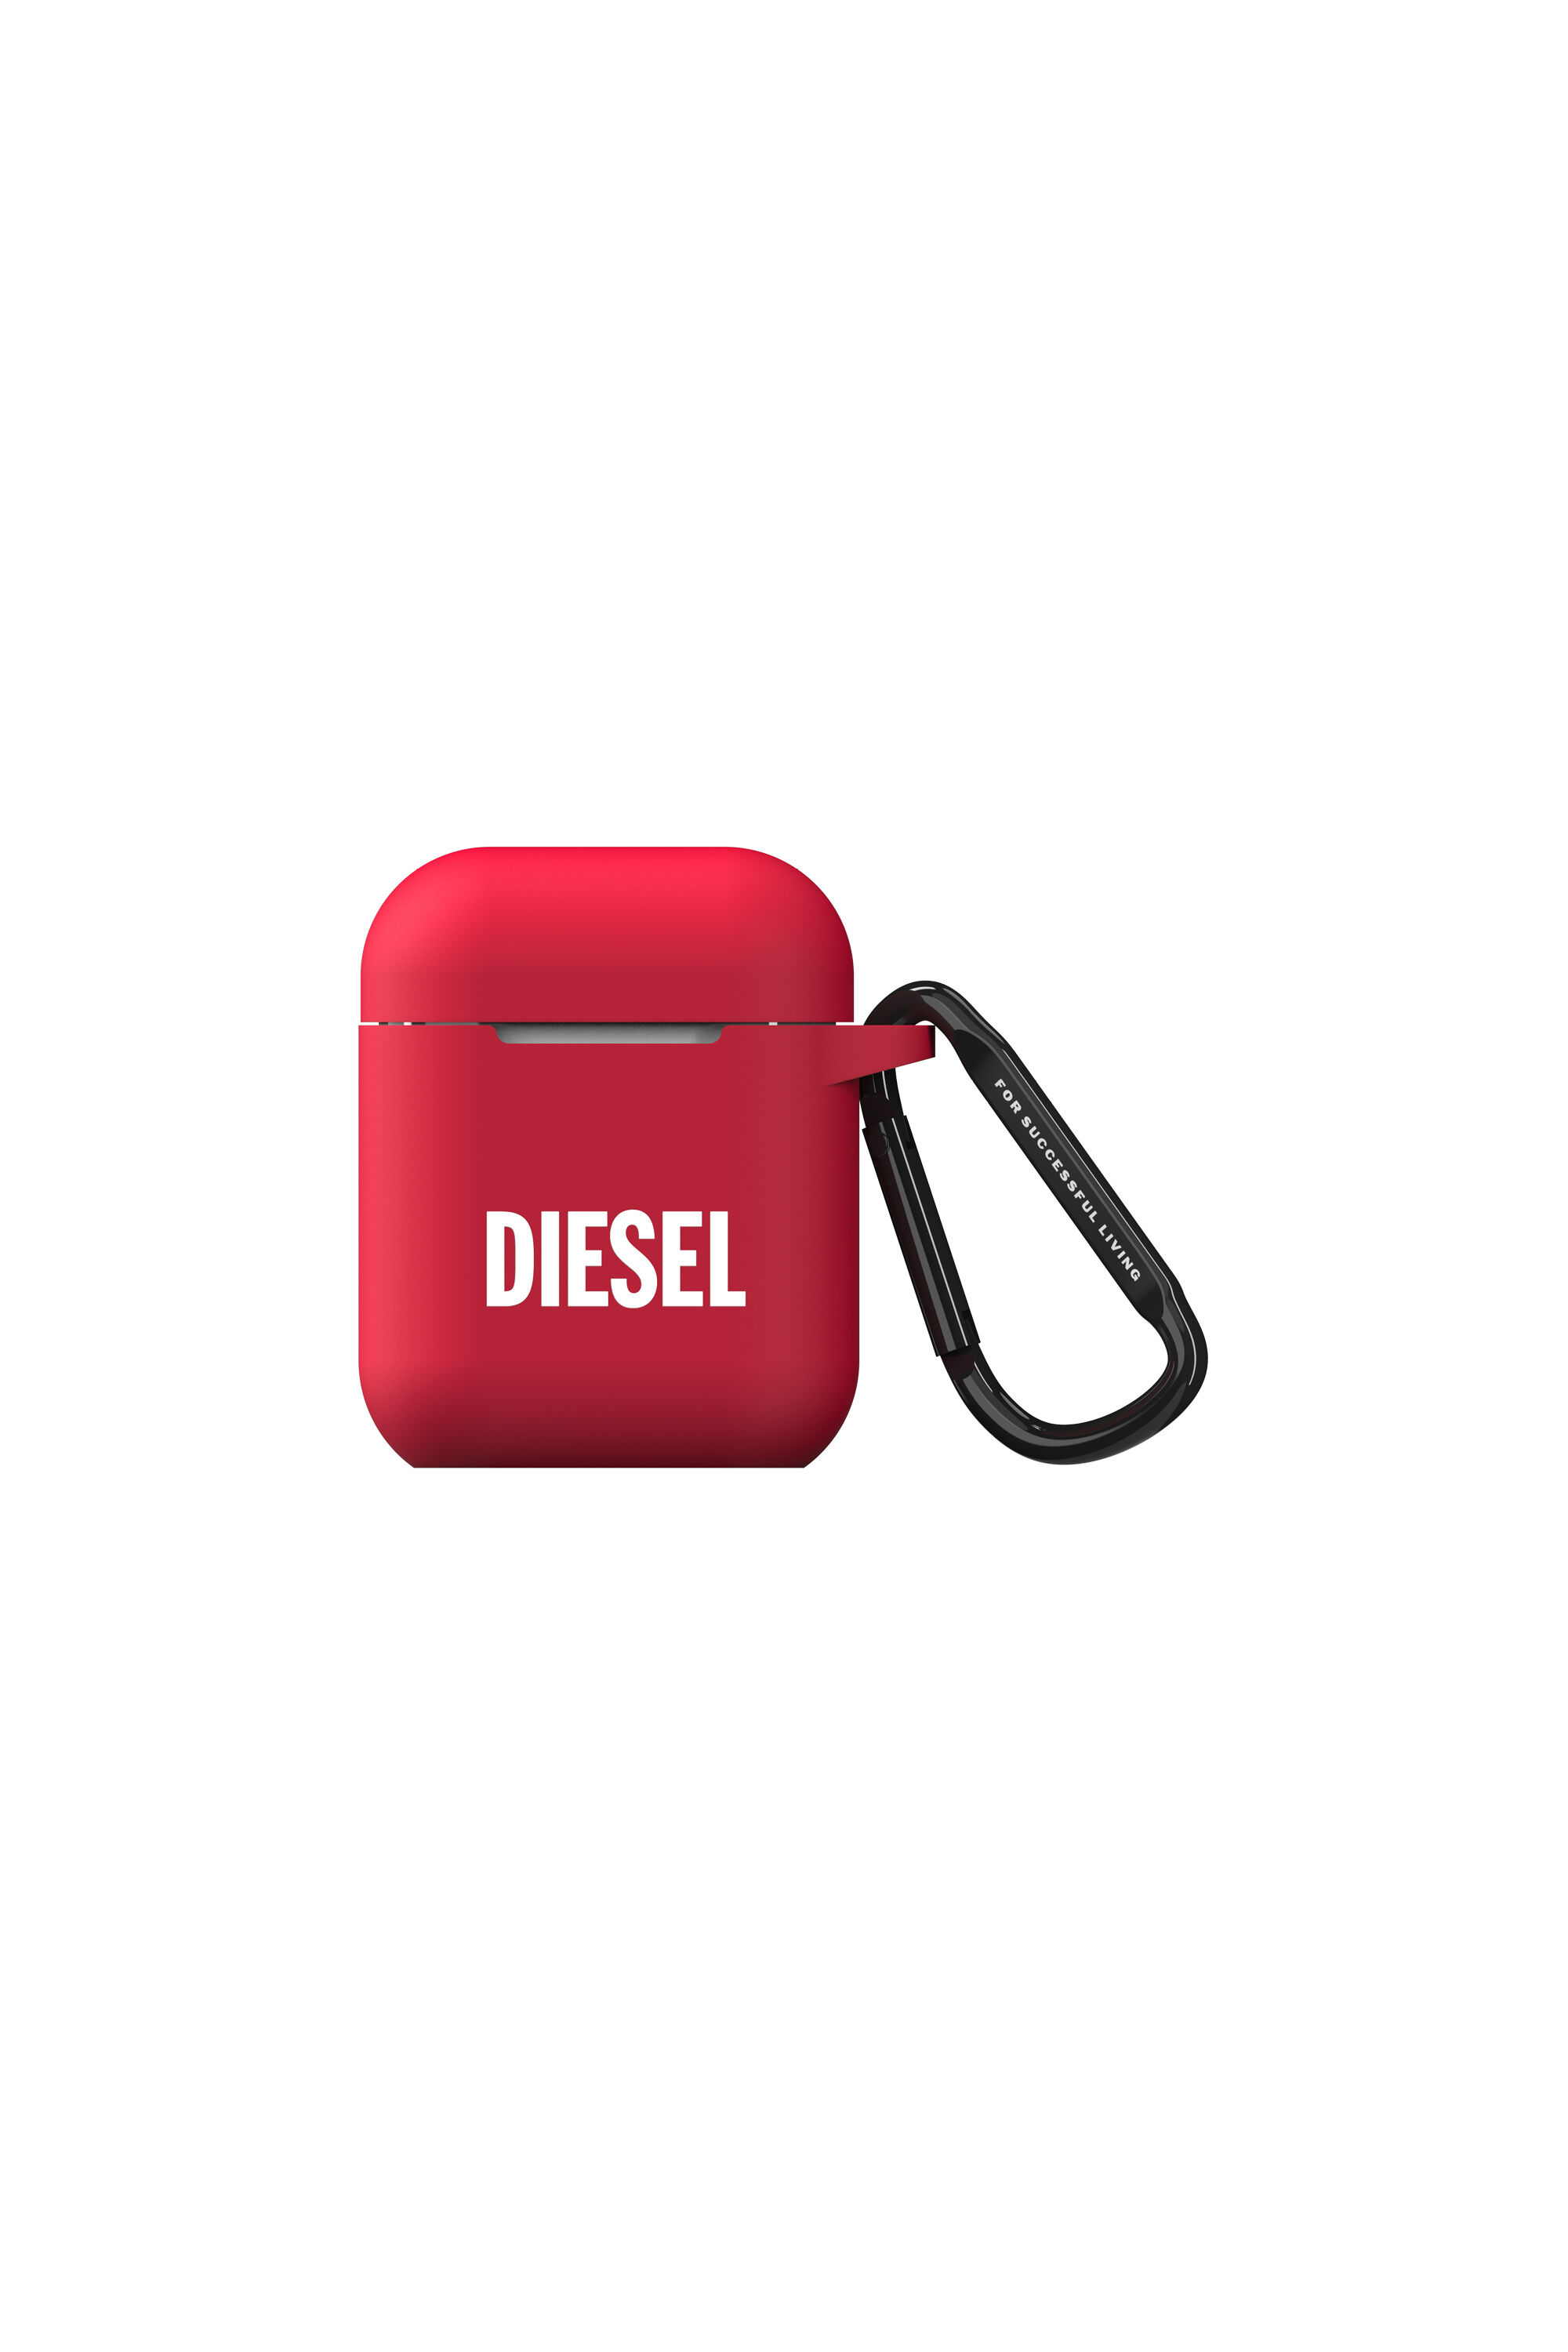 Diesel - 45832 AIRPOD CASE,  - Image 1